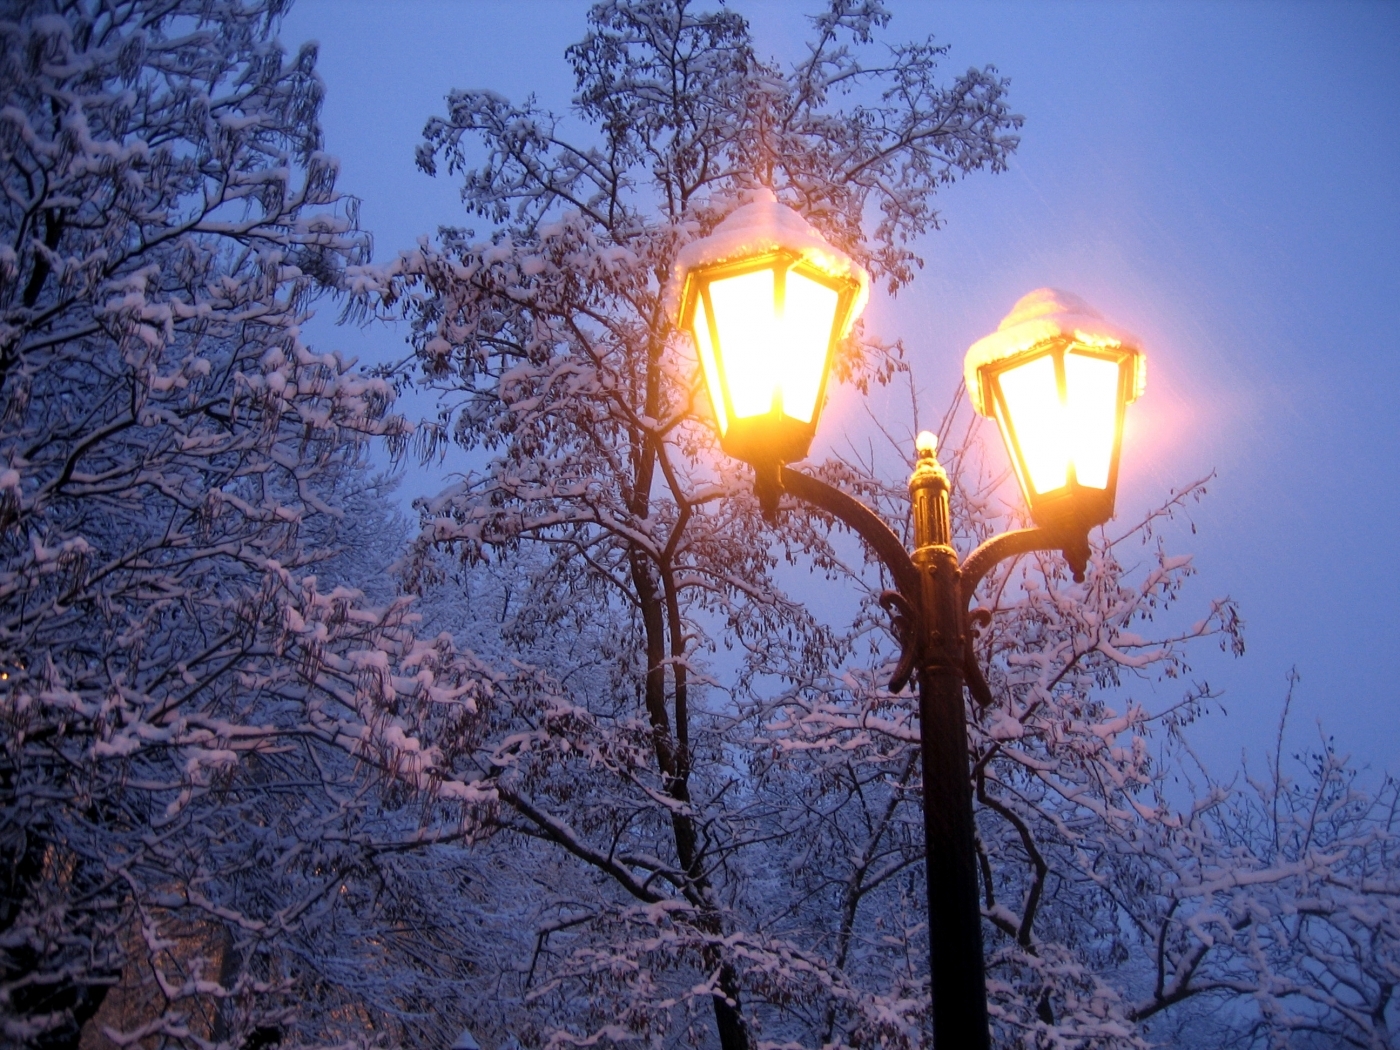 Скачать обои бесплатно Снег, Ночь, Деревья, Пейзаж, Зима картинка на рабочий стол ПК